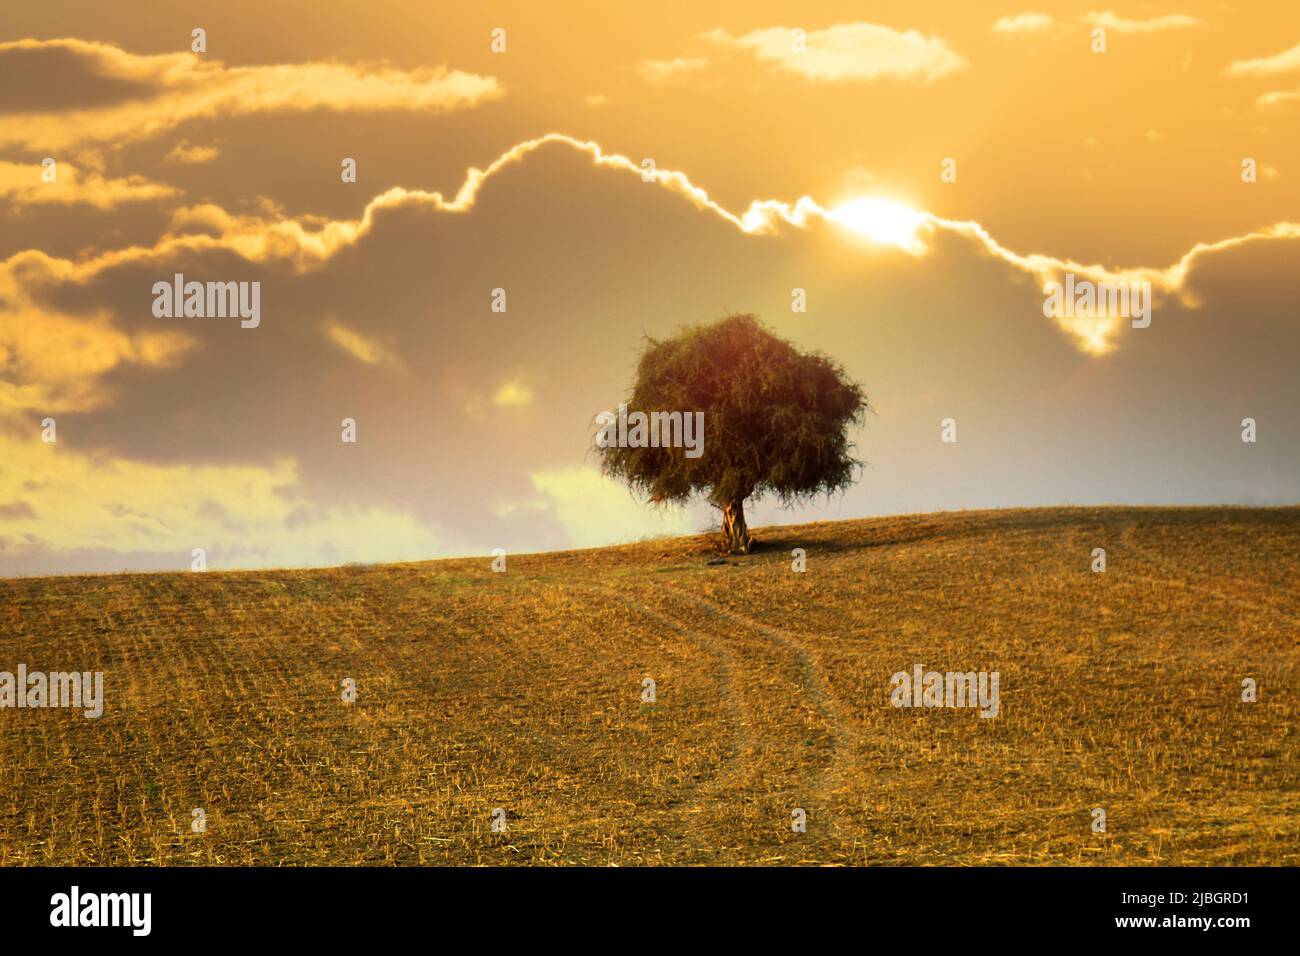 Ein einsamer Baum. Ein alter Baum mit einem verdrehten Stamm und einer runden Krone (dicke Krone wie mattiertes Haar) auf dem Feld. Indien Stockfoto